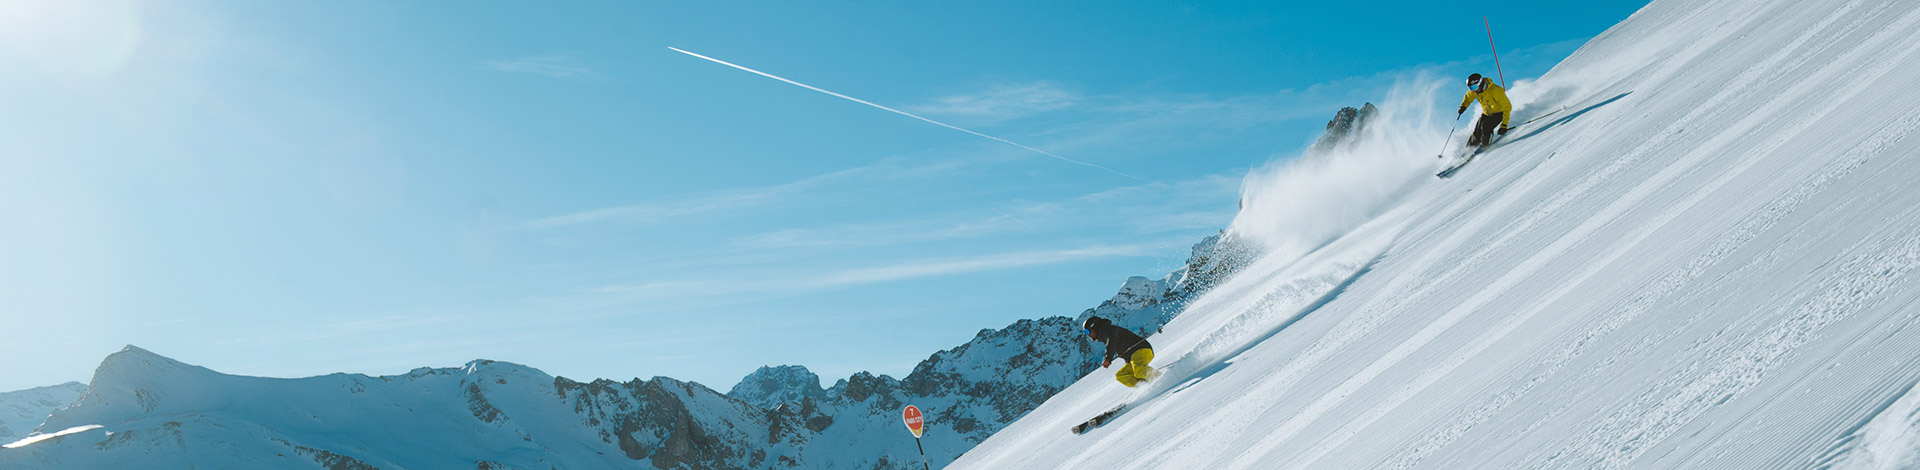 Partez skier sur le plus grand domaine skiable du monde en famille ou entre amis : des panoramas uniques à perte de vue !